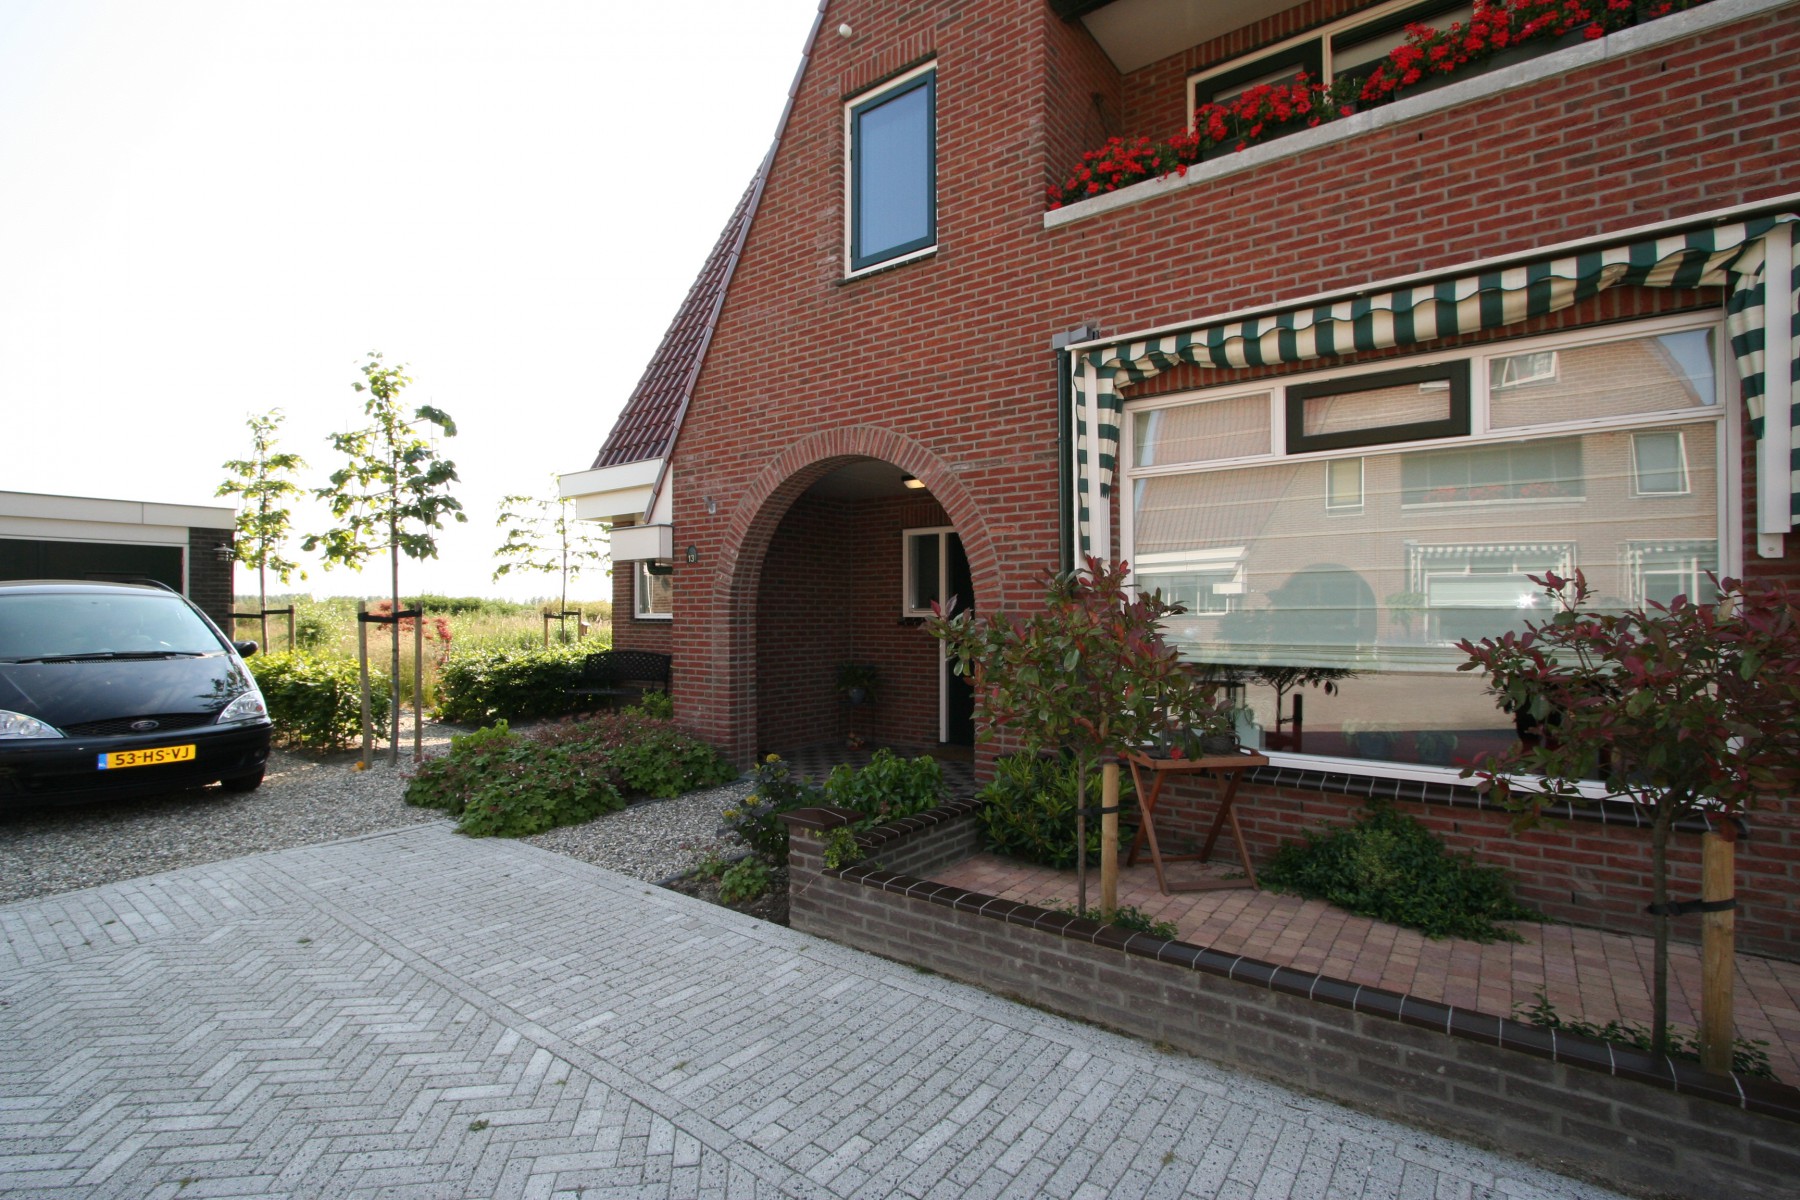 Zoetermeer, Oosterheem, 2-onder-1-kap woningen